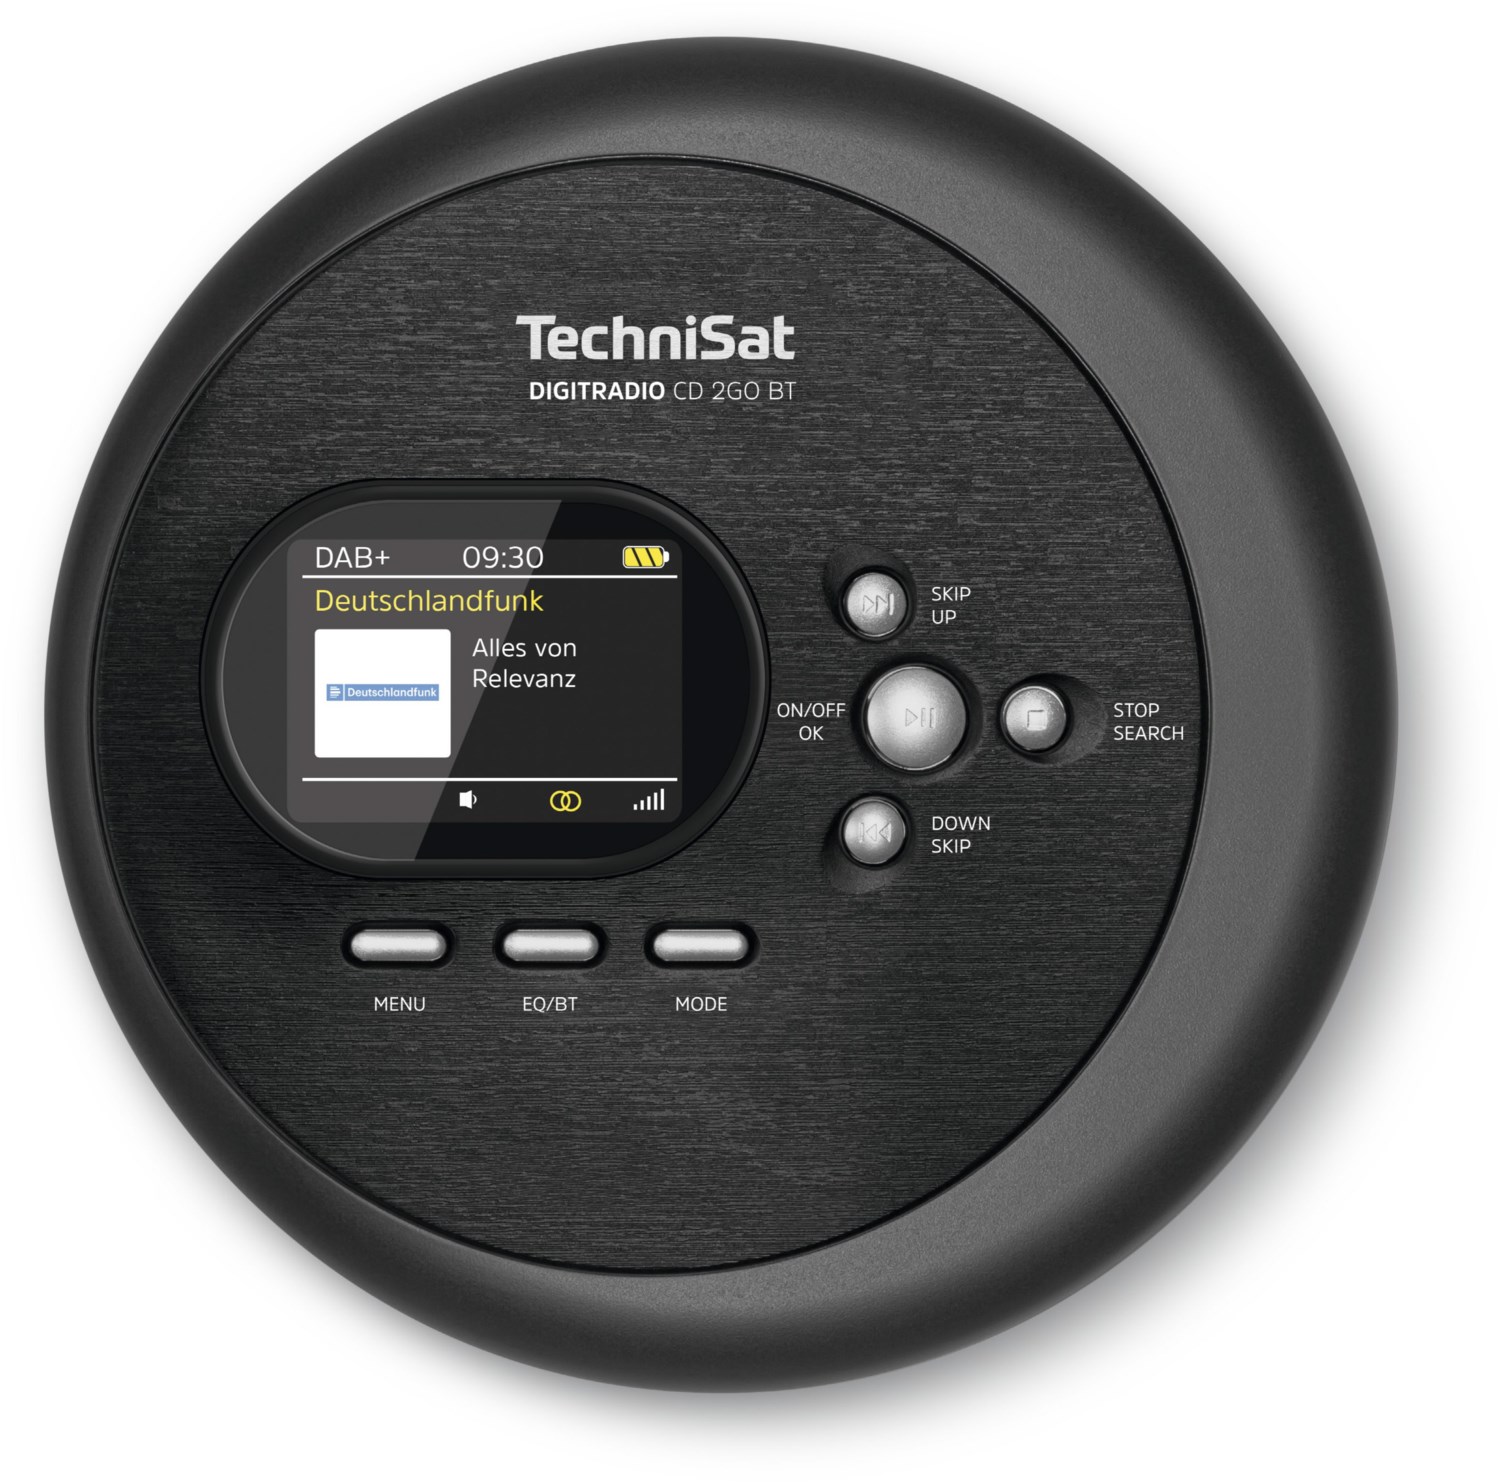 DigitRadio CD 2GO BT tragbarer MP3 CD-spieler mit Radio schwarz von Technisat